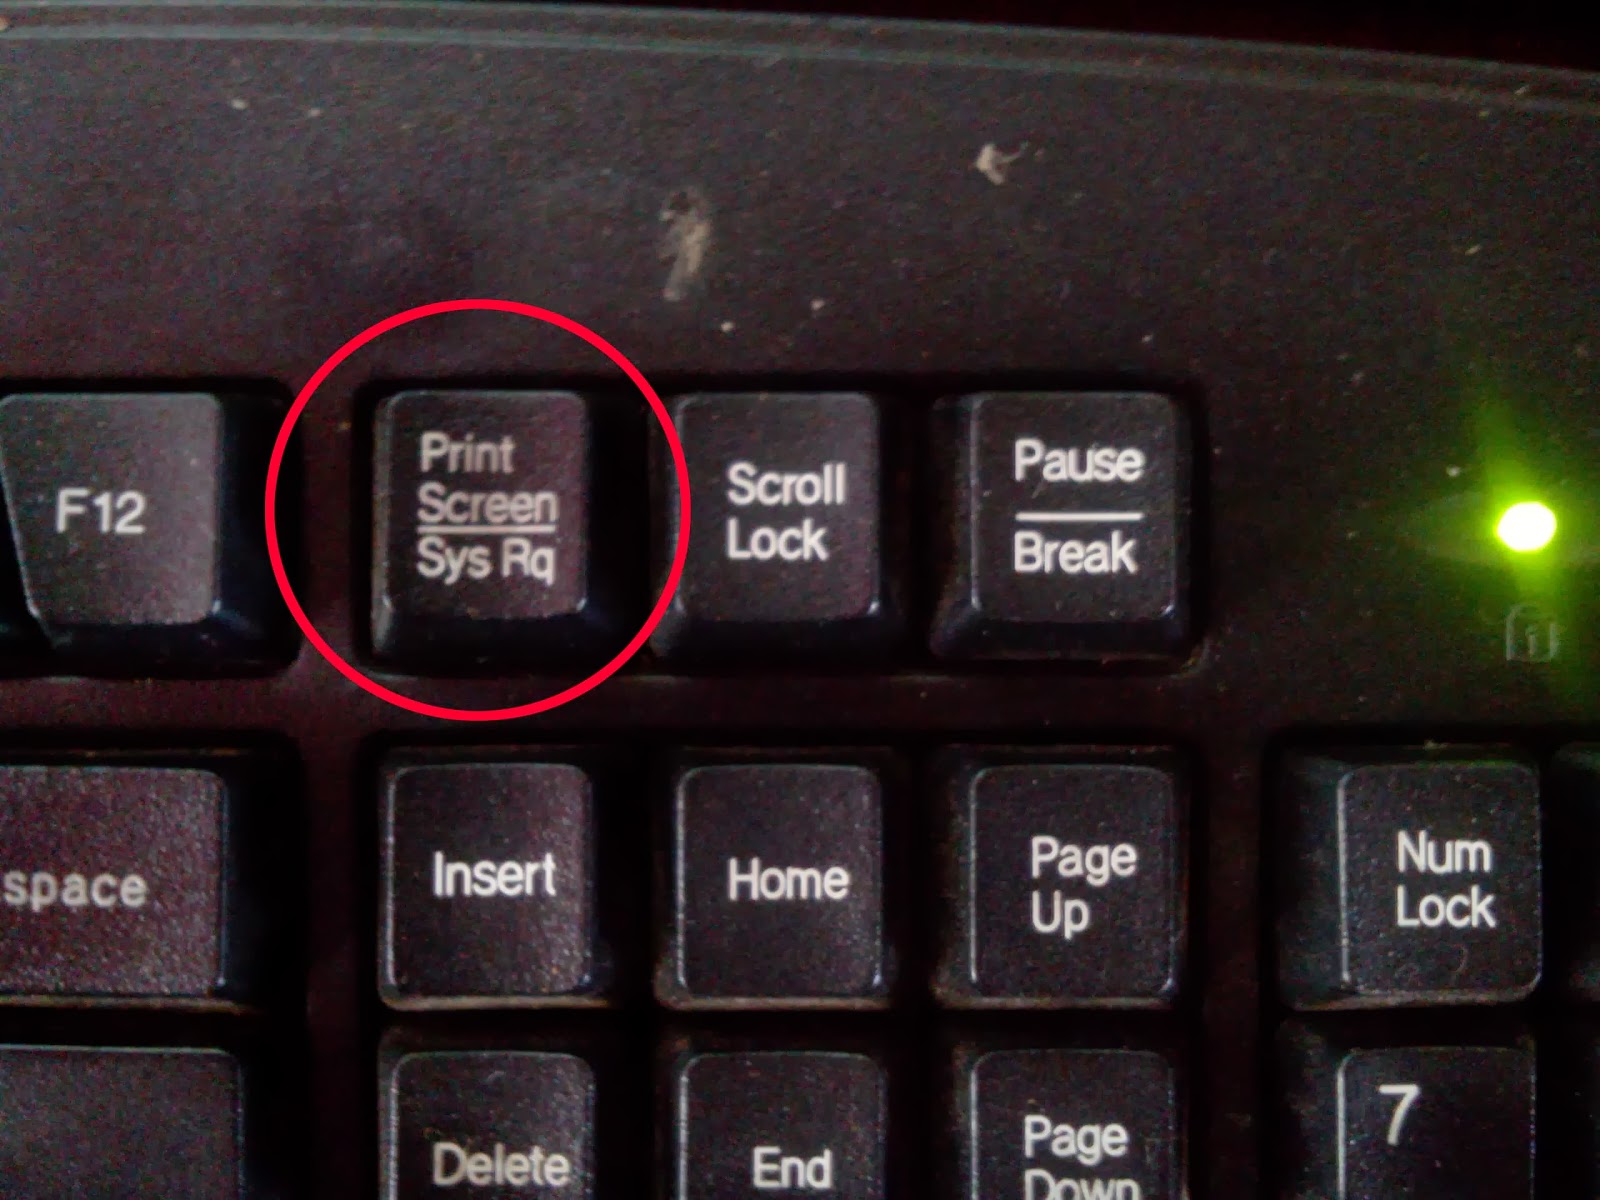 Кнопка принтскрин на клавиатуре